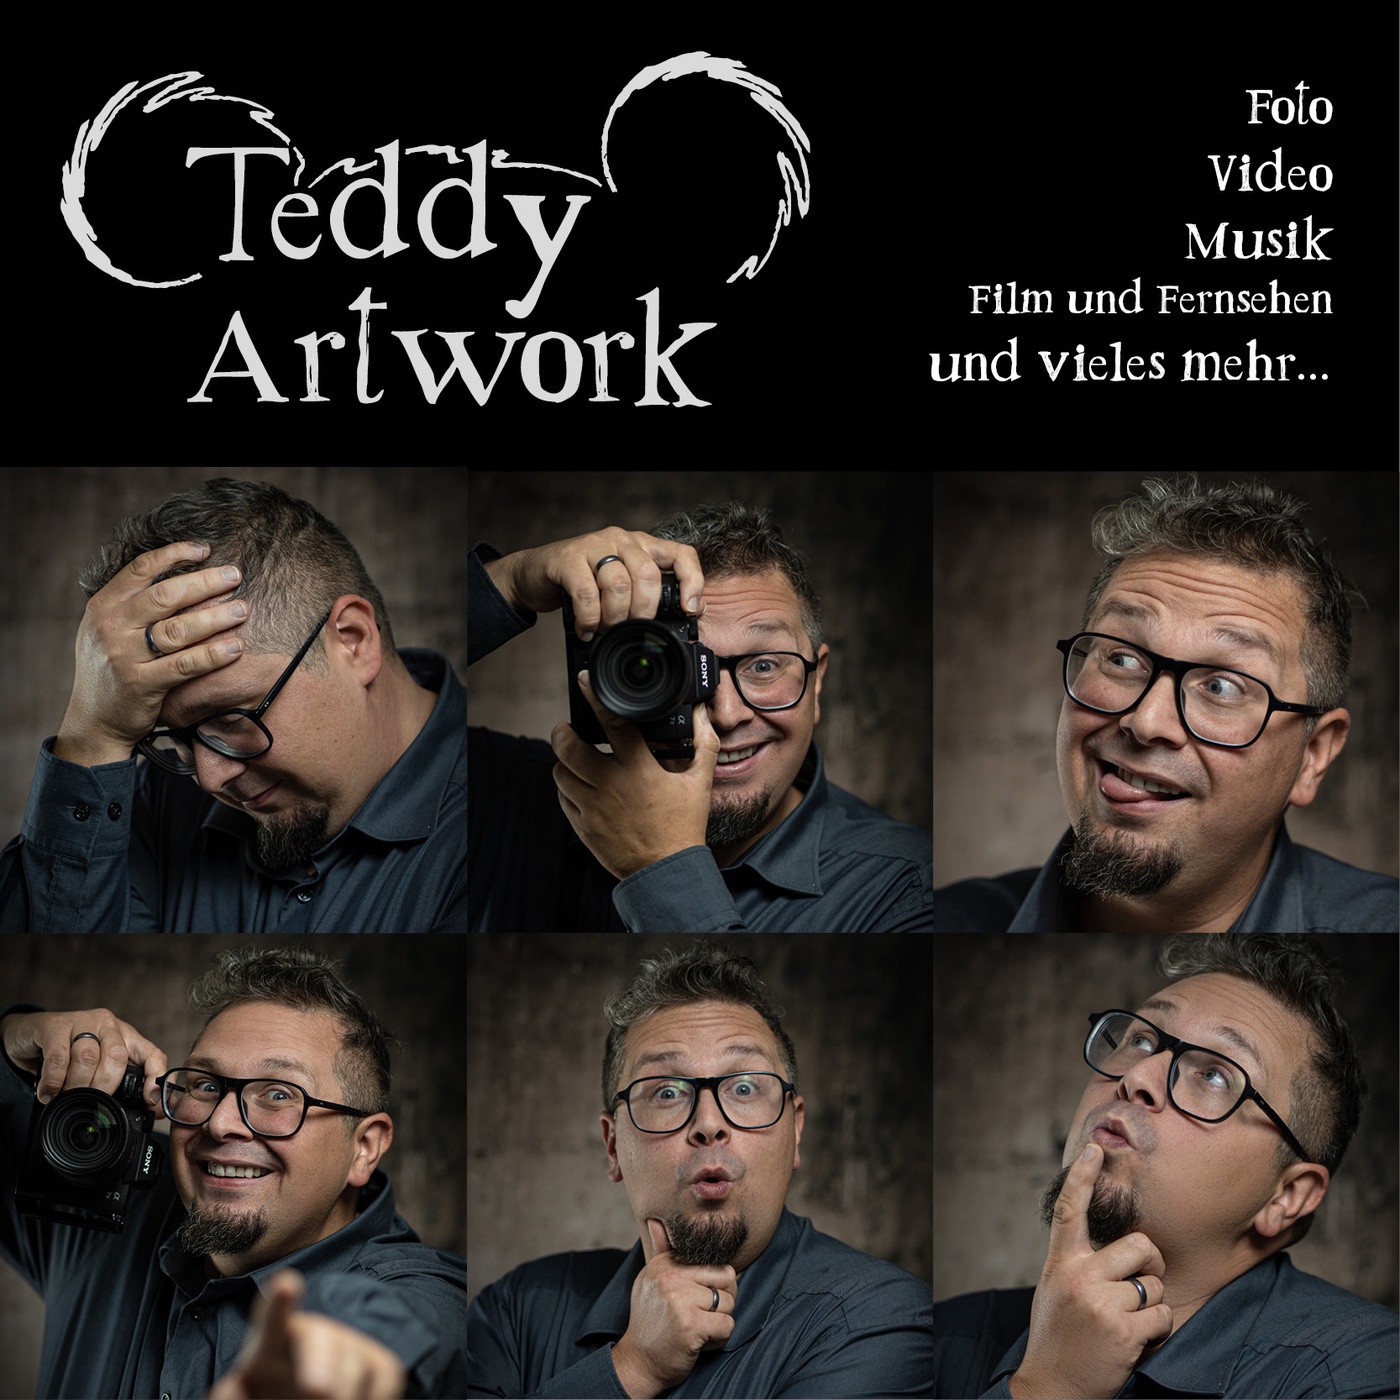 Teddy Artwork - Der Podcast für Foto, Video, Film und Fernsehen und vieles mehr...